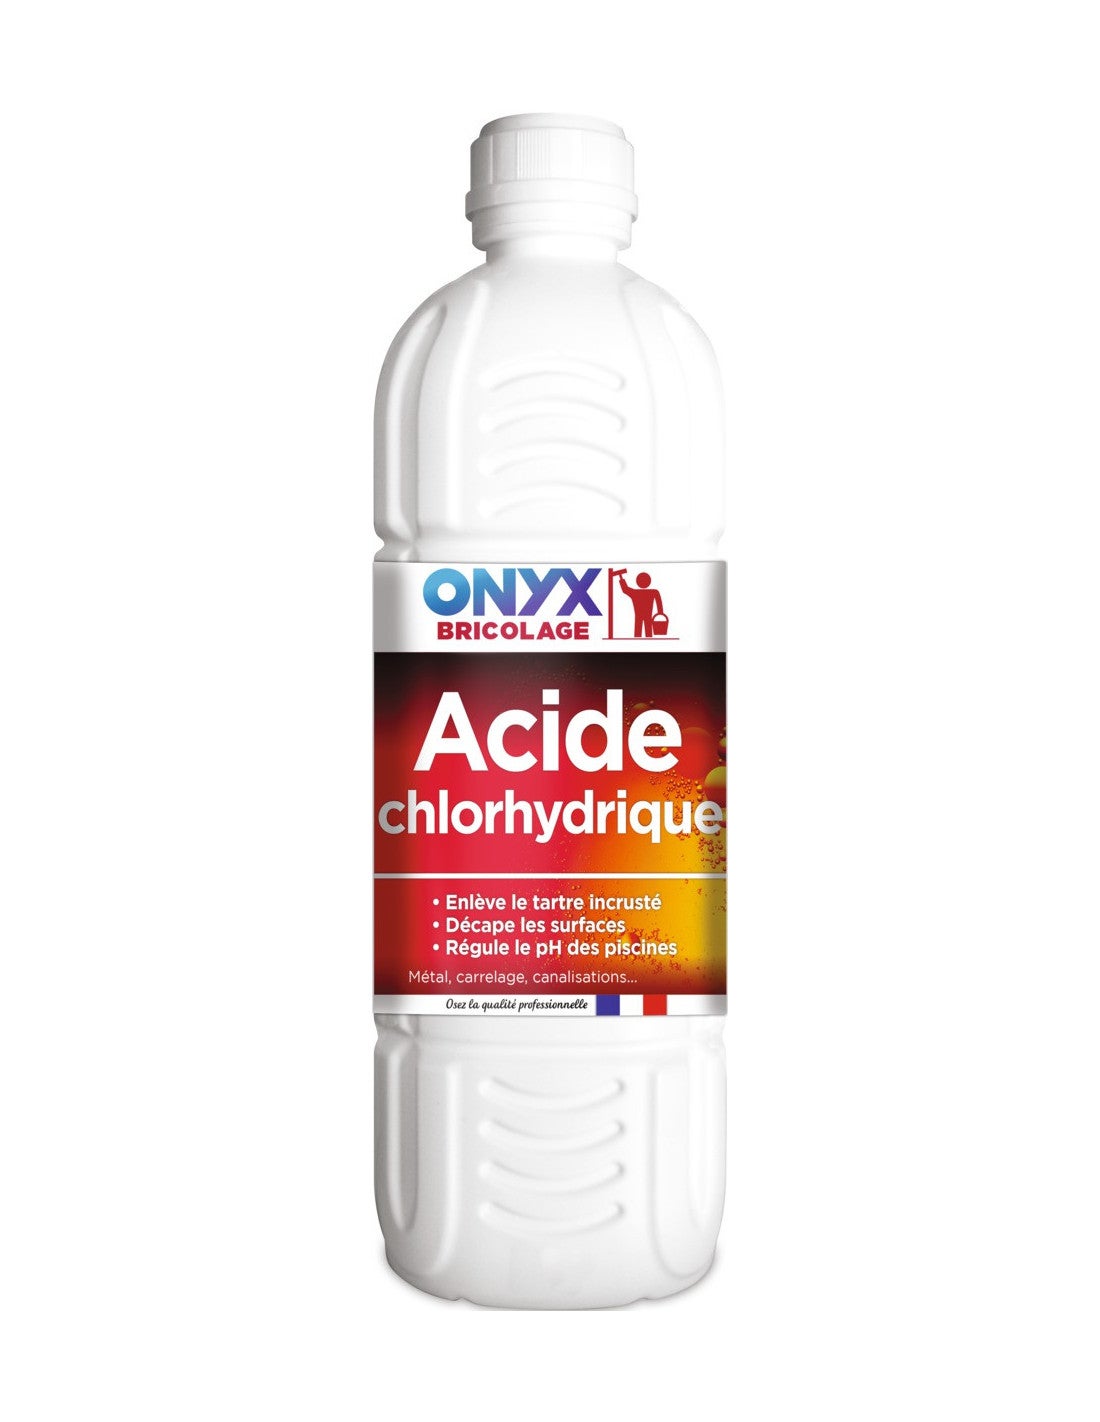 Acide Chlorhydrique 1N 1L – Kämpf Fournitures Laitières Sàrl